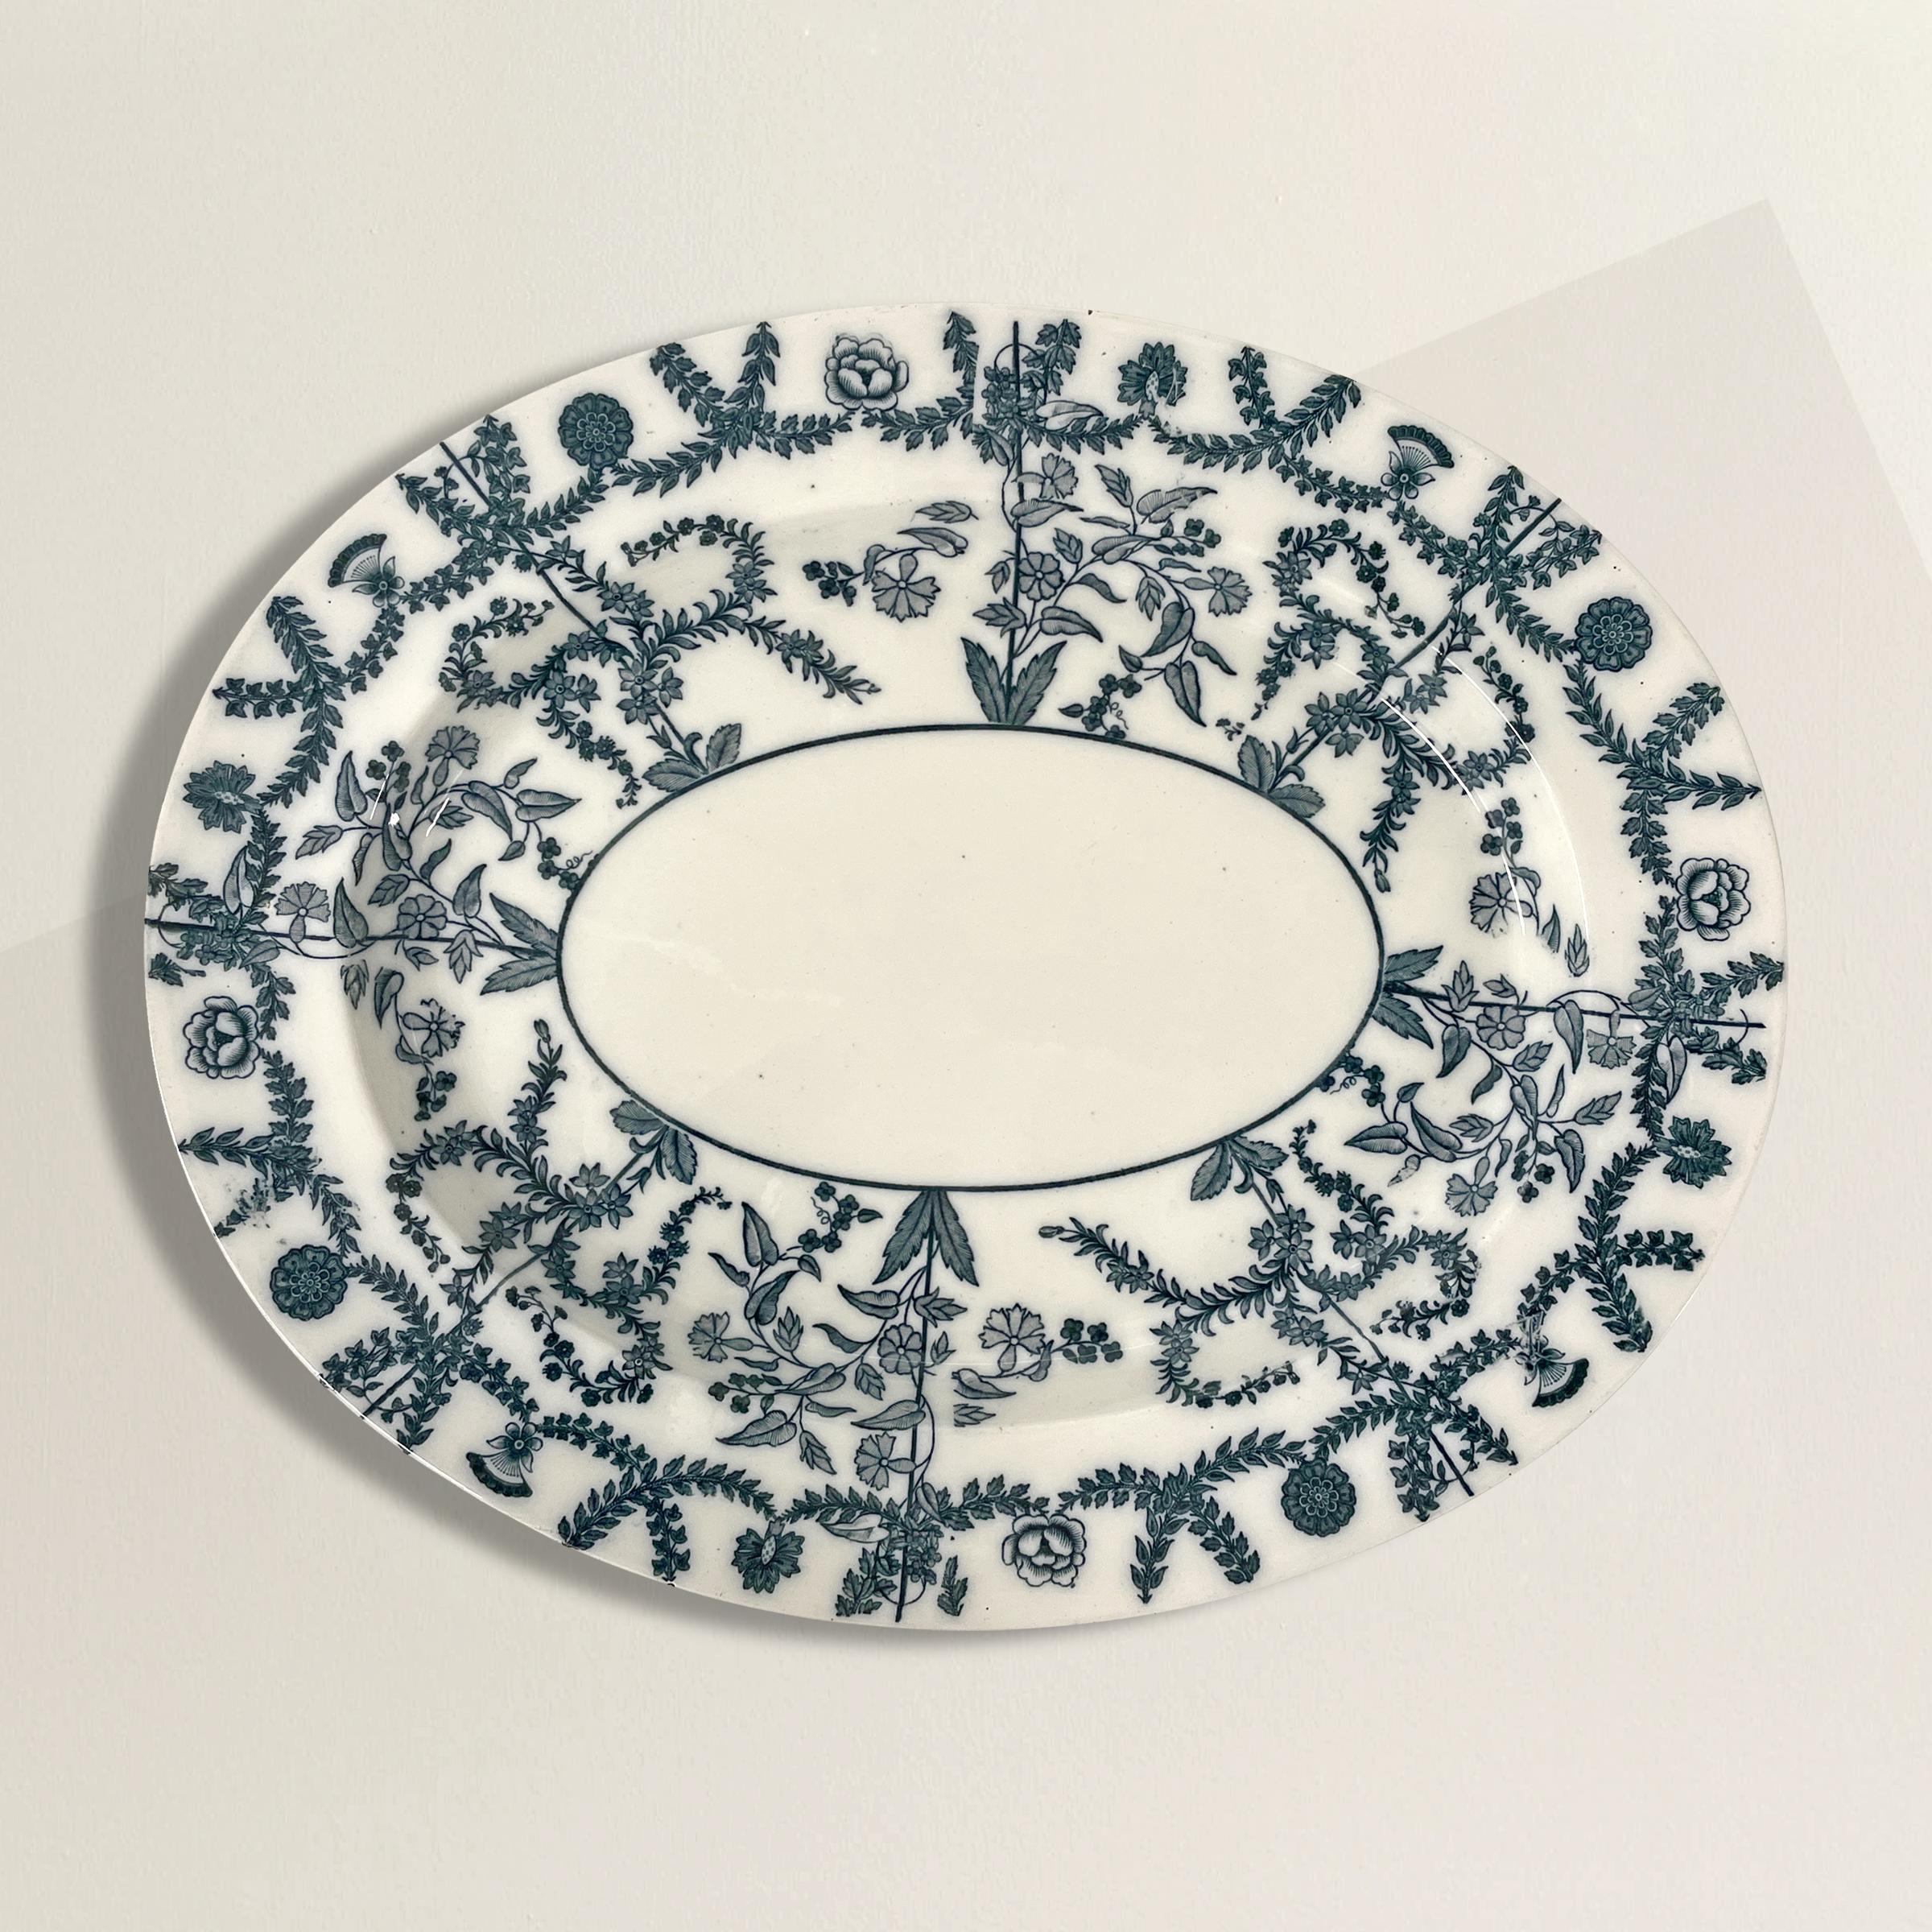 Ein unglaublicher weißer Porzellanteller von Spode aus dem späten 19. Jahrhundert mit einem charmanten blauen Blumenmuster mit Rosen, Blattfestons und anderen blühenden Ranken. Die Platte ist ziemlich tief und eignet sich hervorragend zum Servieren